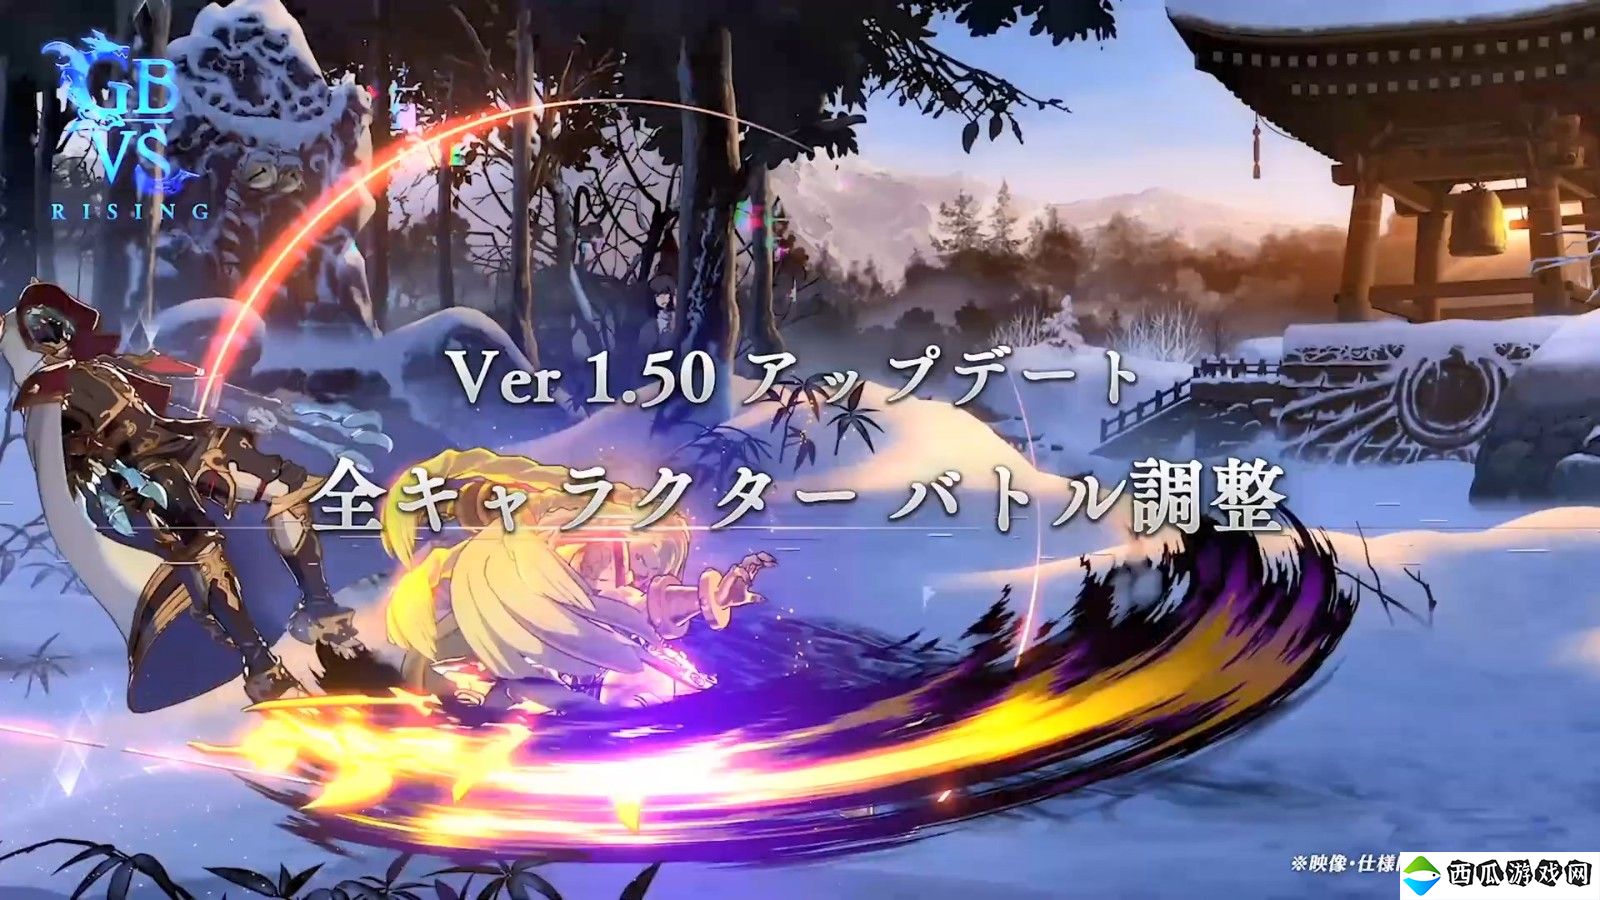 《碧蓝幻想Versus：Rising》DLC角色“维萨西娅”8月20日上线 免费更新同步